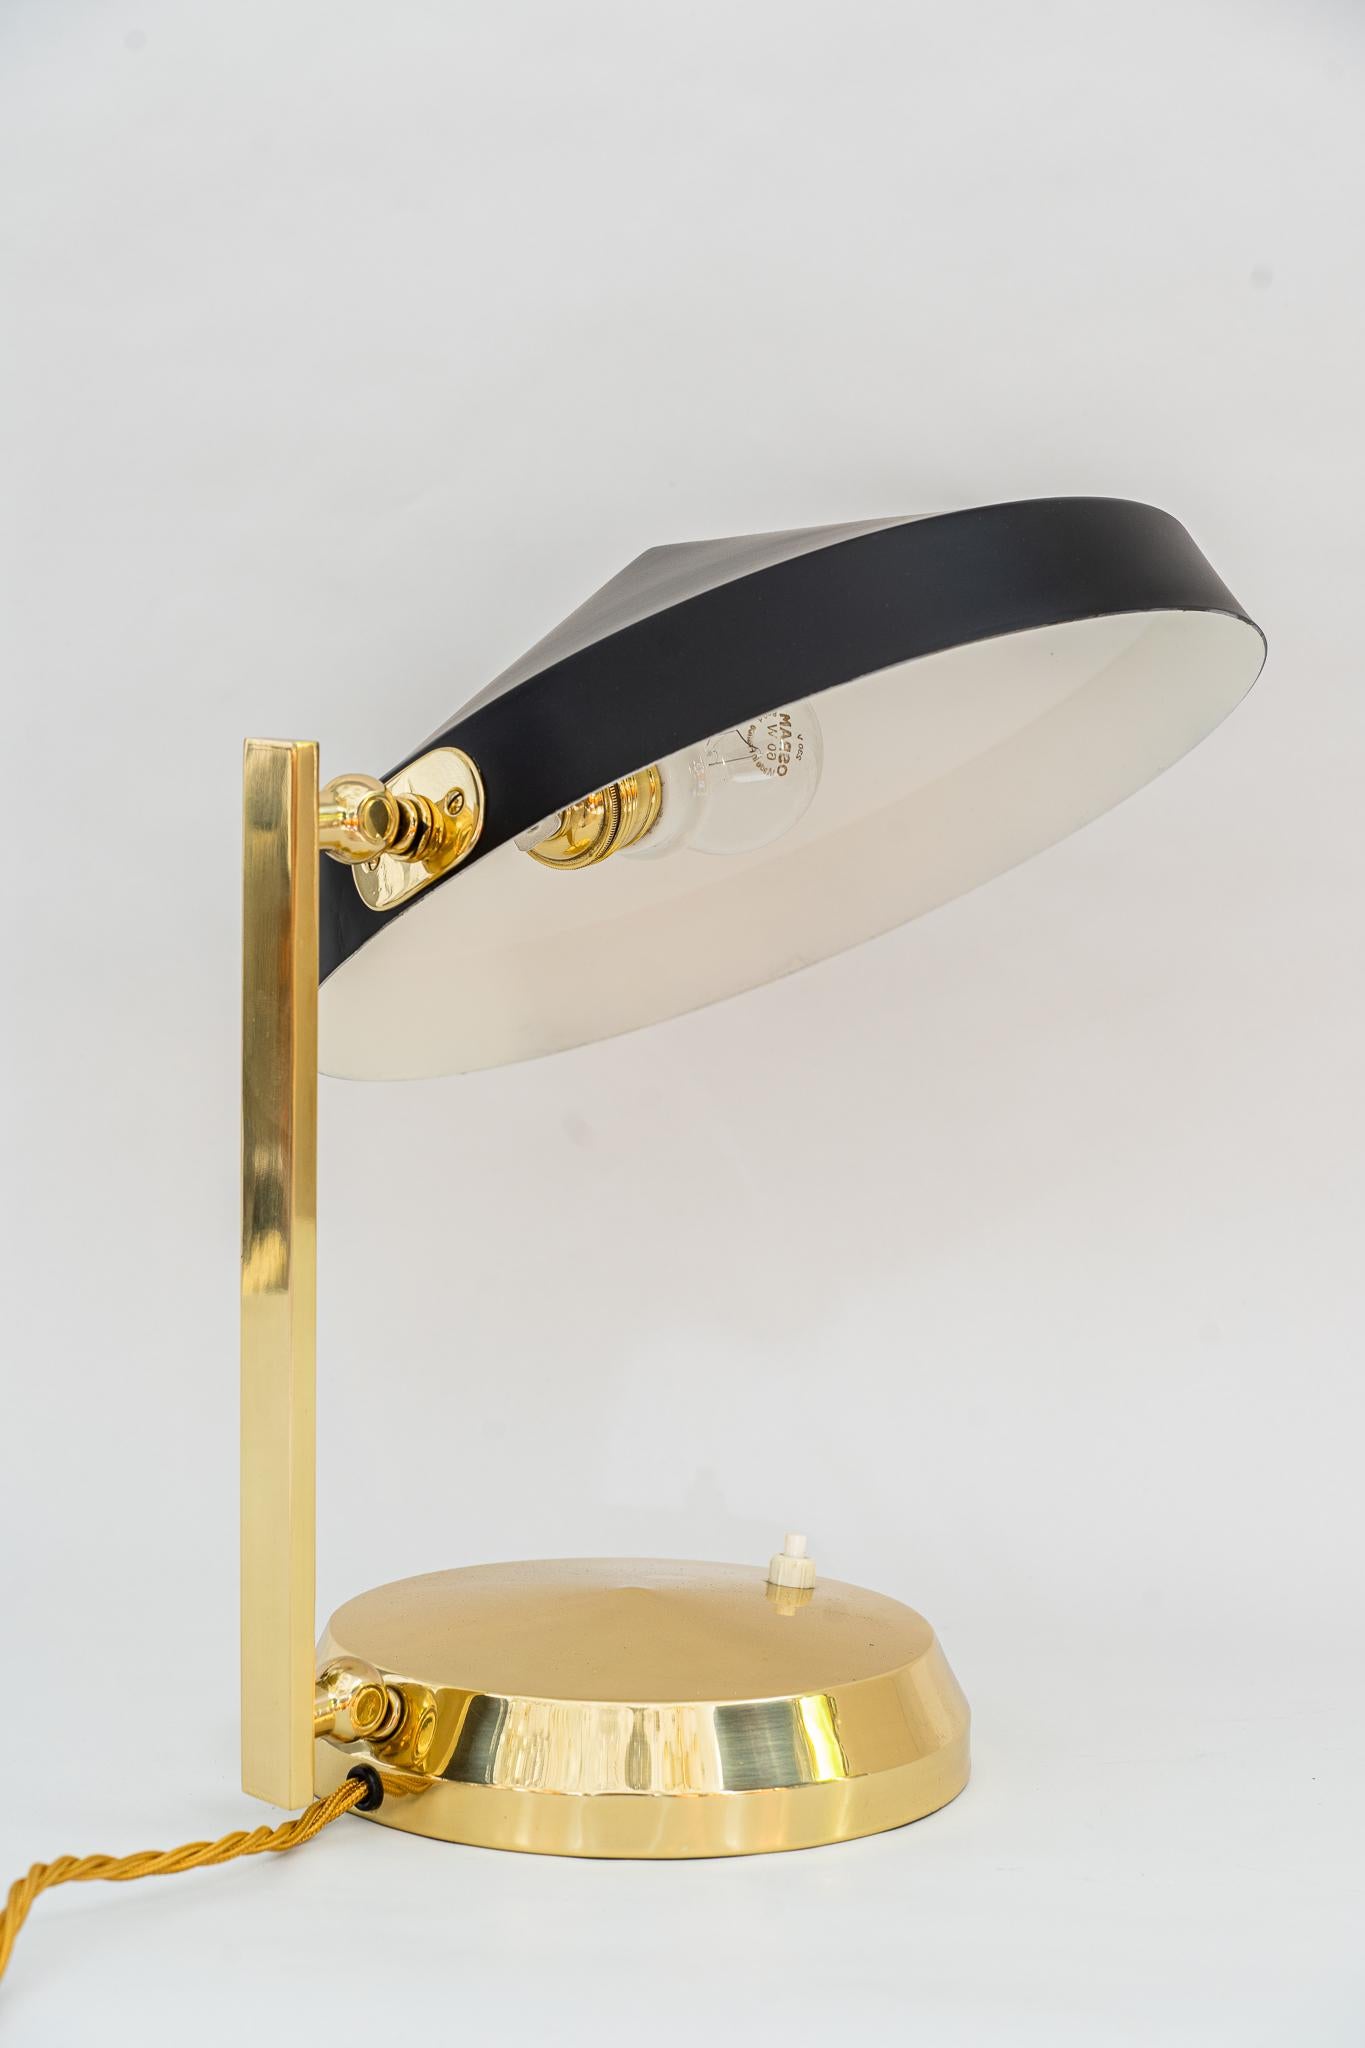 Tischlampe Wien um 1960er Jahre
Messing poliert und emailliert
Schirm aus Aluminium (schwarz lackiert).